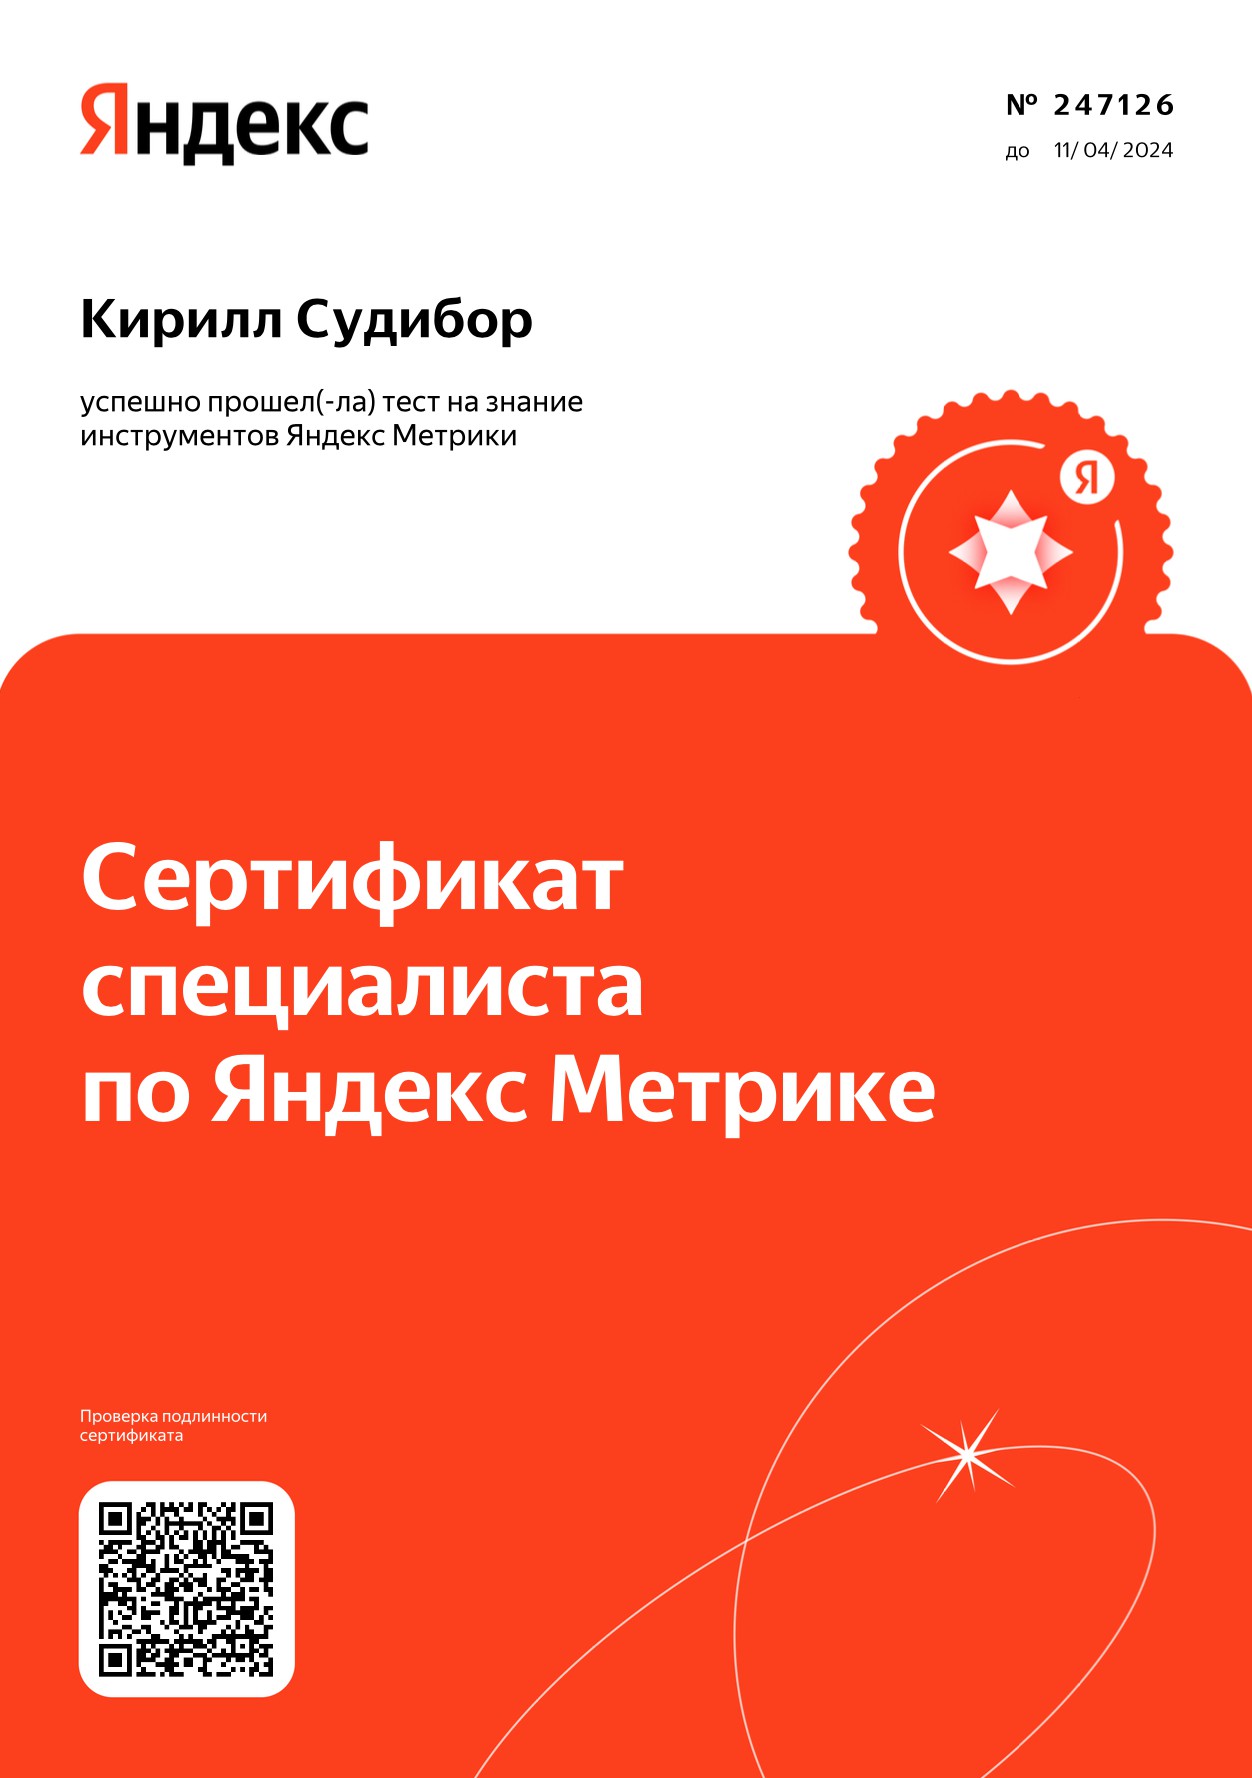 Сертифицированный специалист Яндекс.Метрики 2023 г.